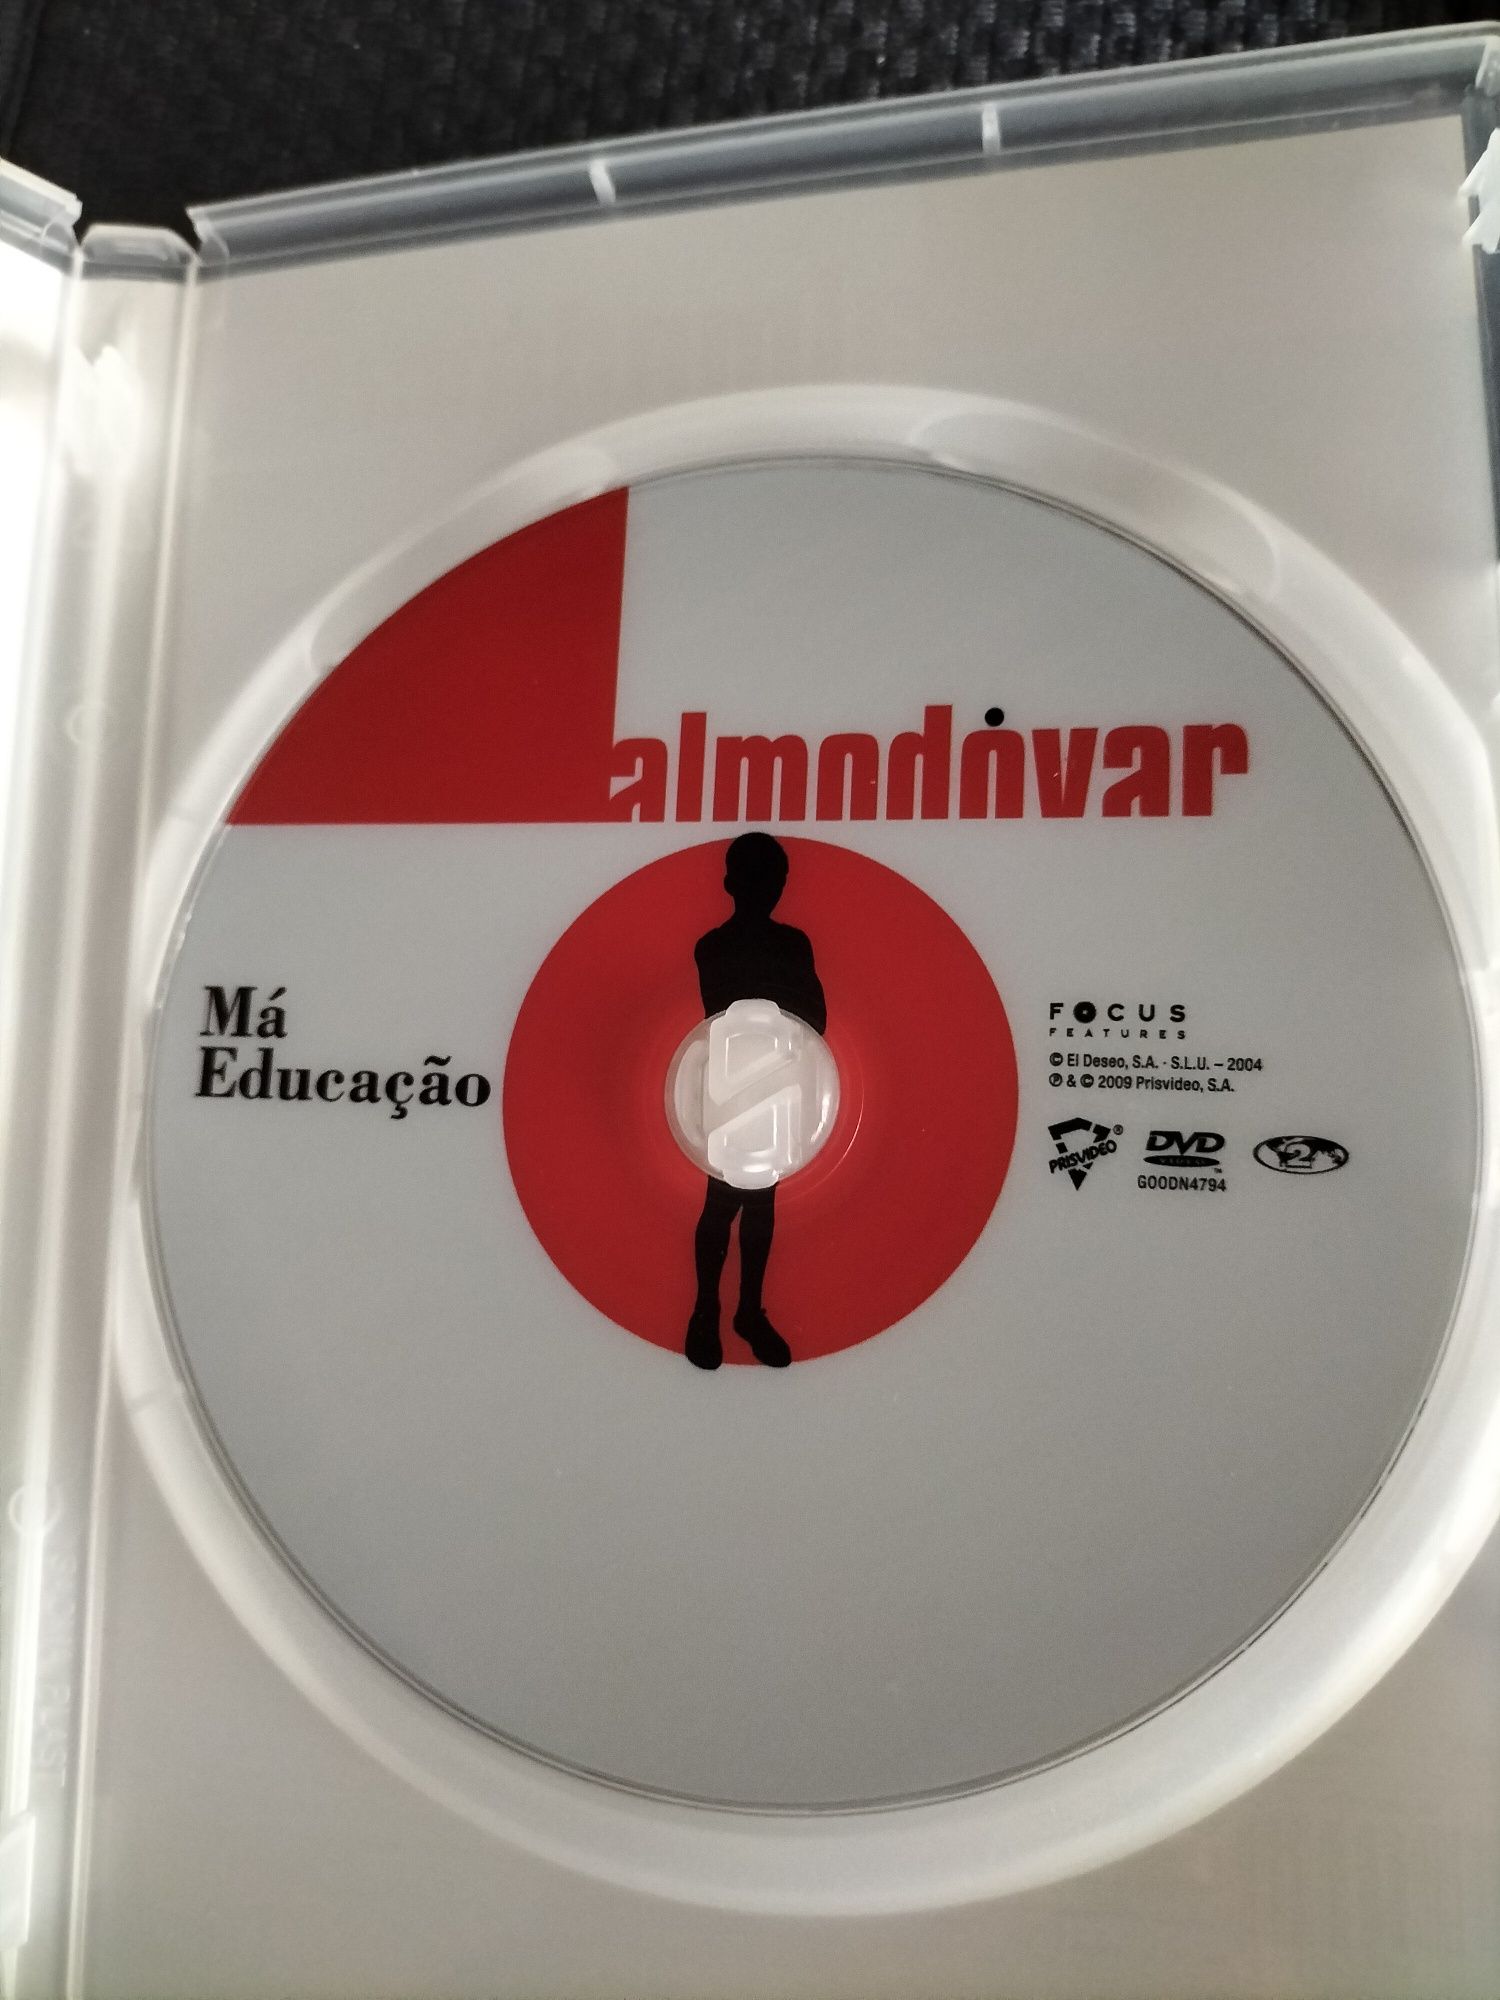 Pedro Almodóvar 5 filmes